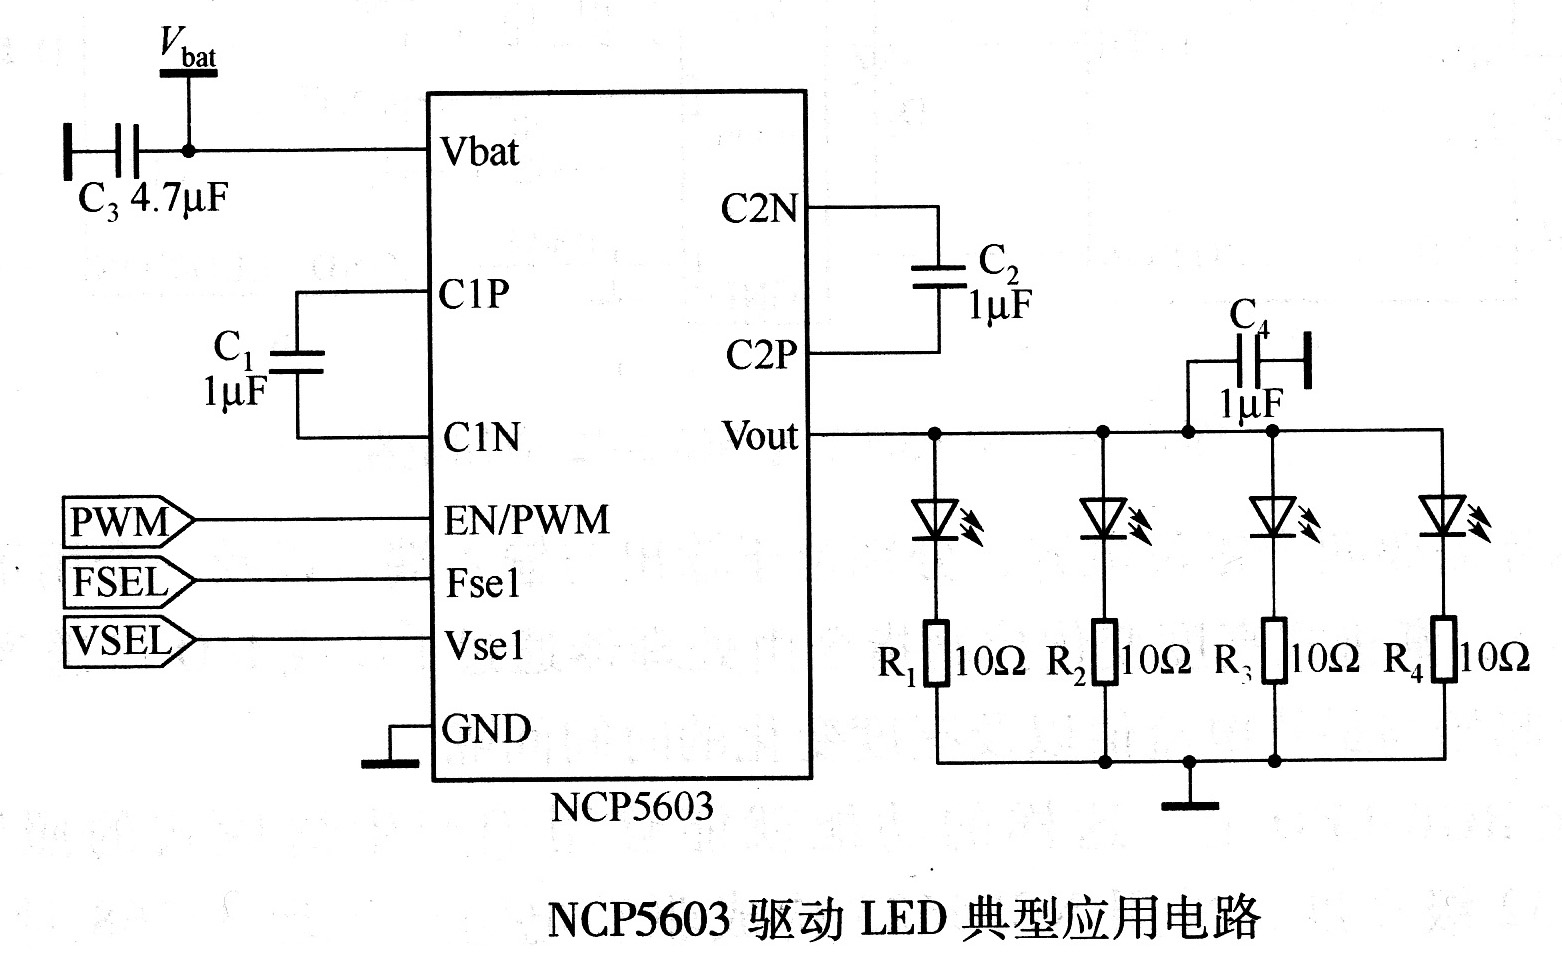 NCP5603驱动LED典型应用电路